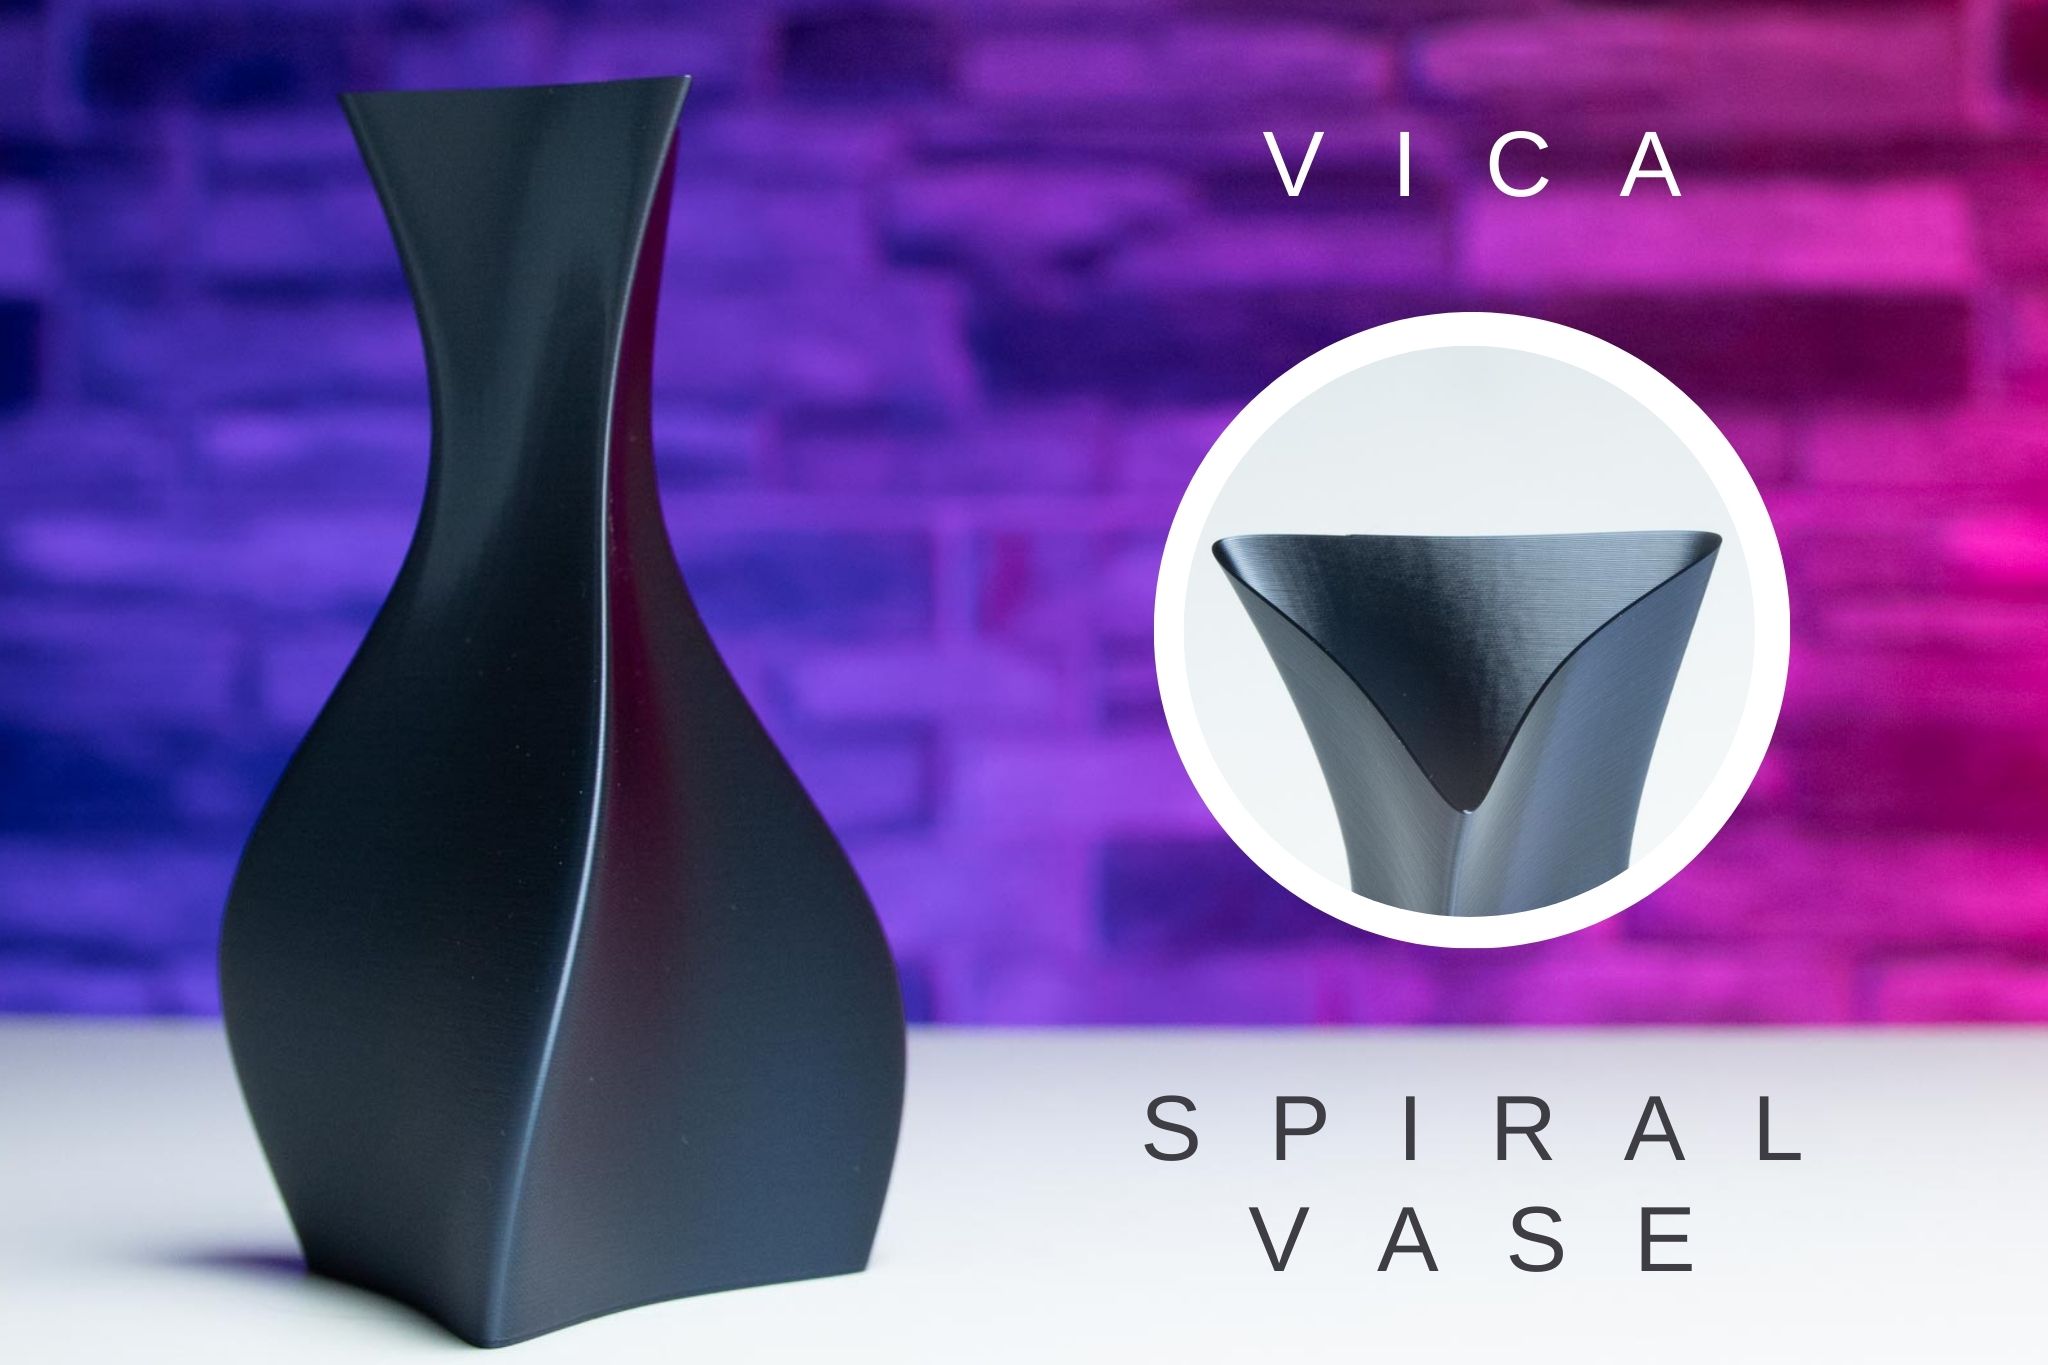 3D Printed Spiral Vase VICA 